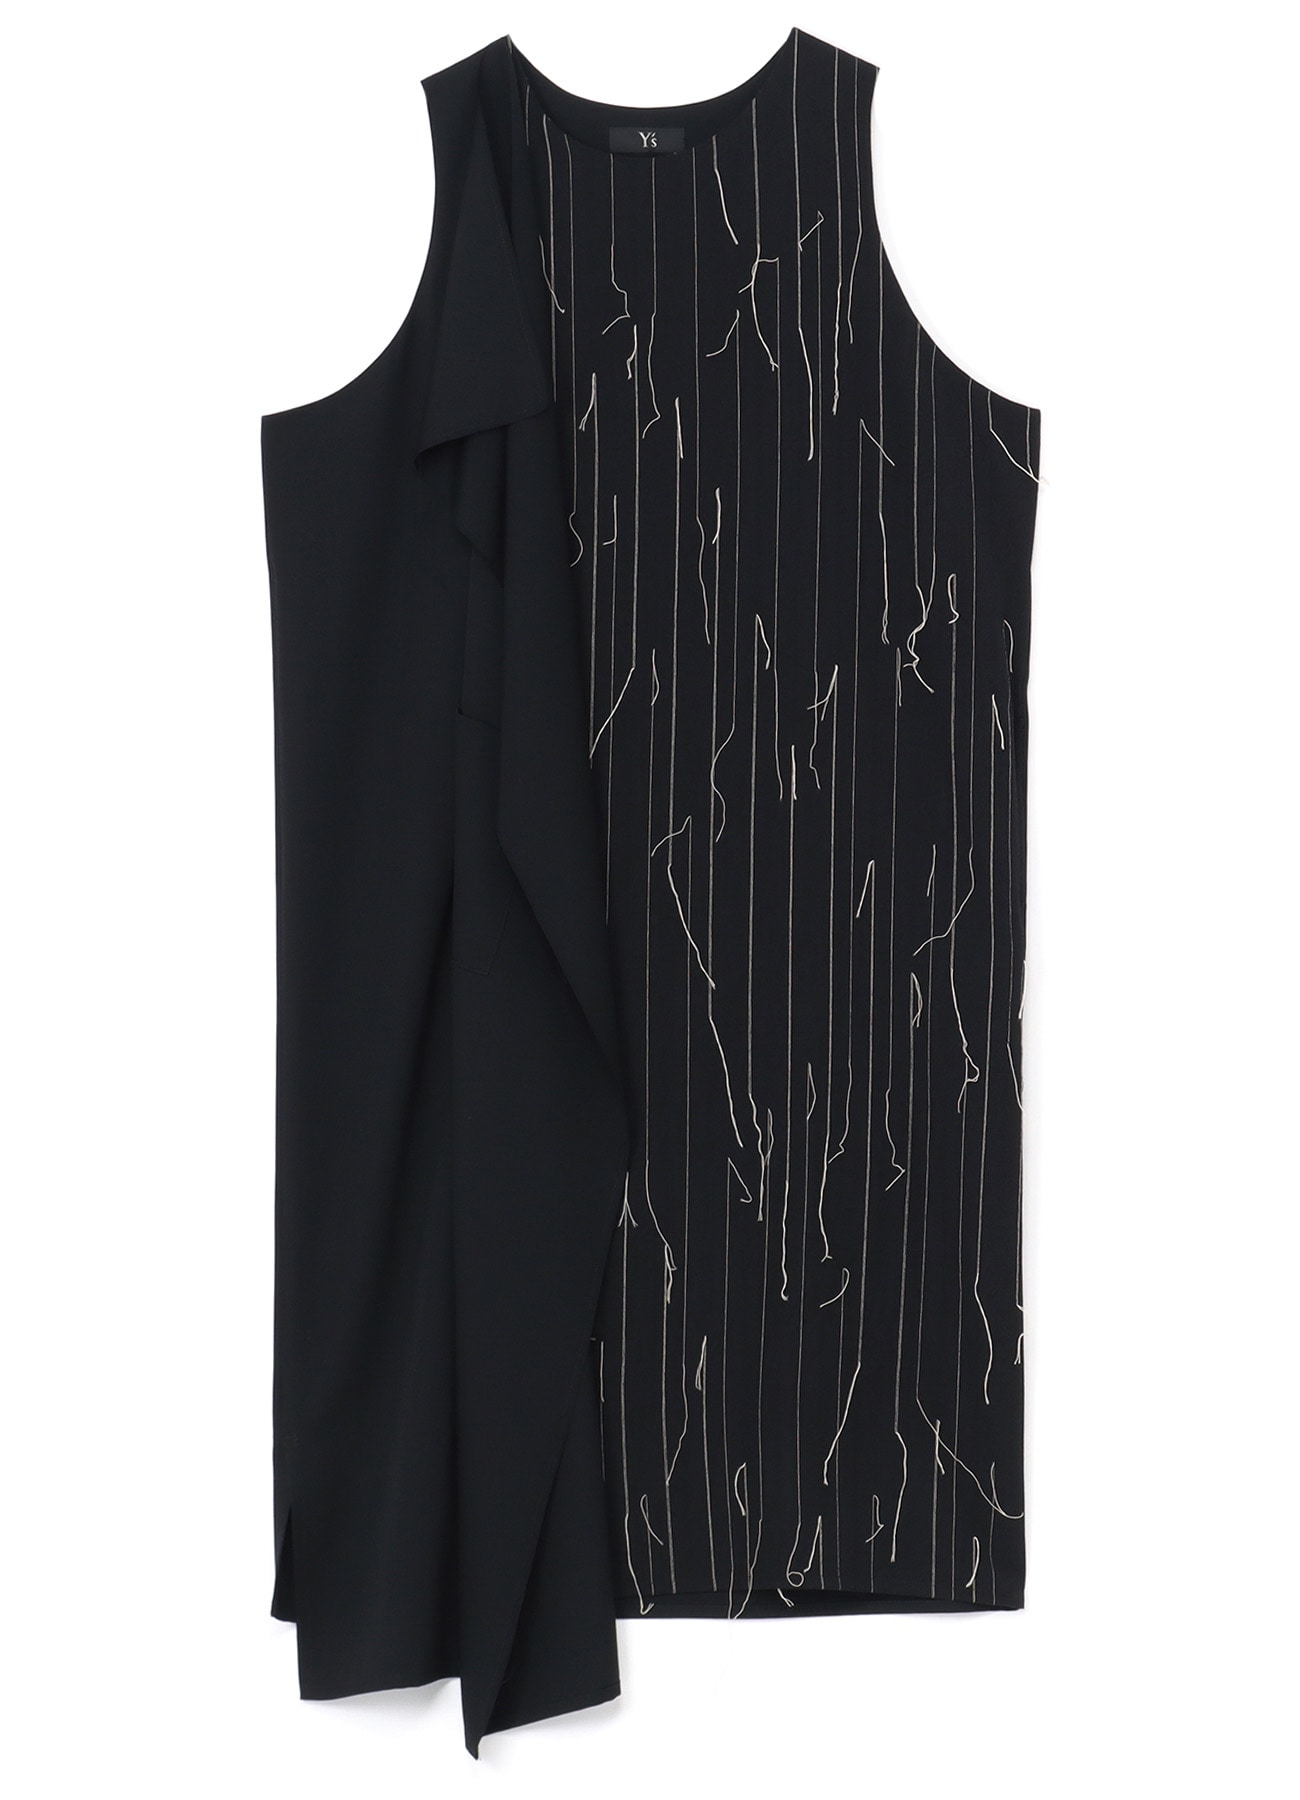 WOOL RIGHT FLAP DRESS(XS Black): Vintage 1.2｜THE SHOP YOHJI YAMAMOTO